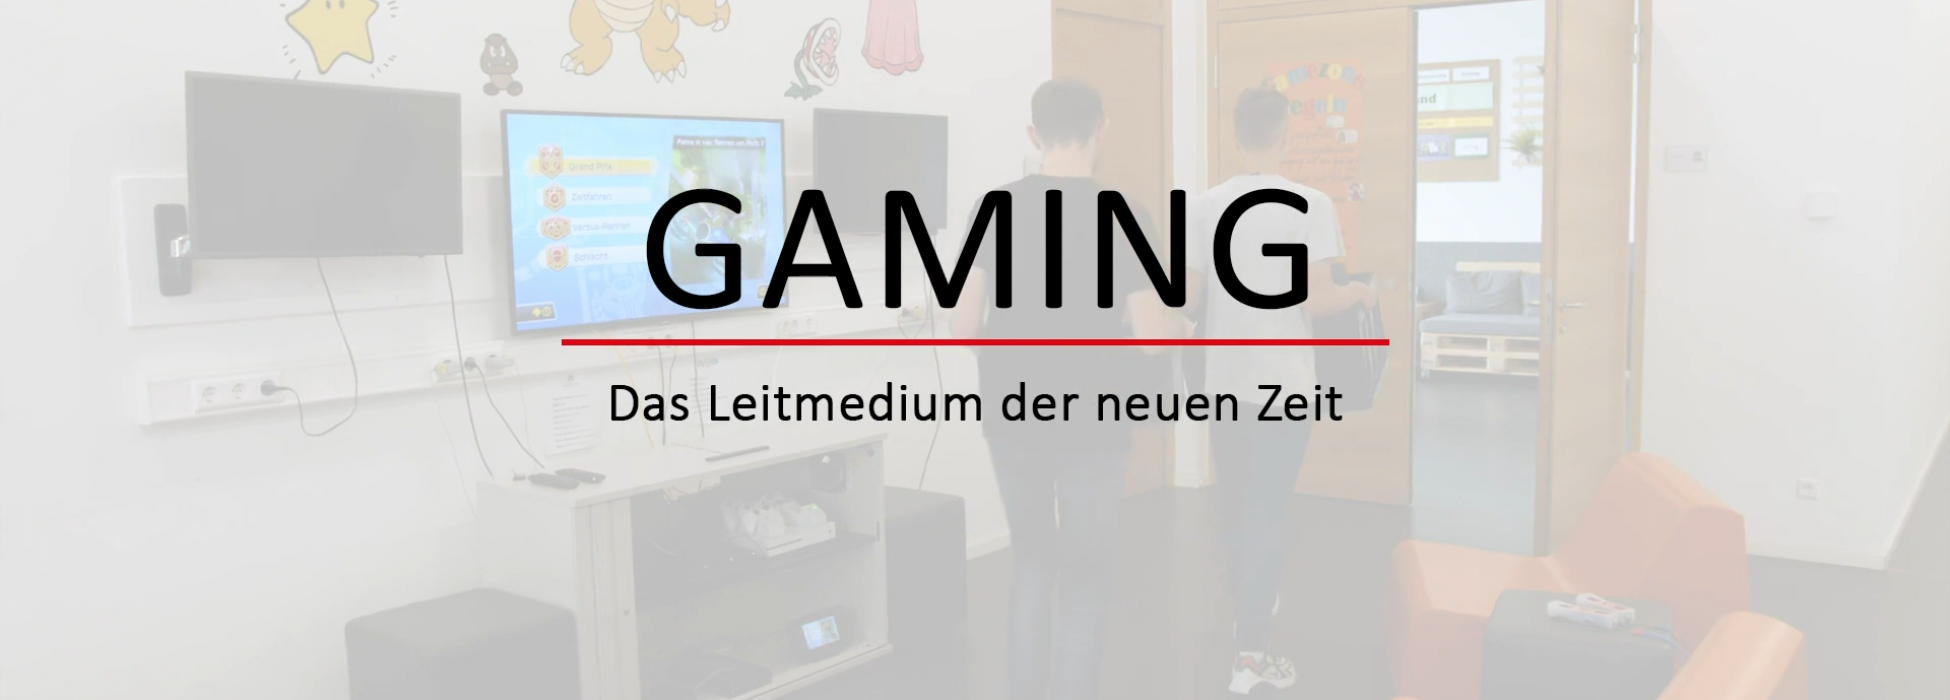 Schriftzug "Gaming - Das Leitmedium der neuen Zeit" vor ausgegrautem Hintergrund